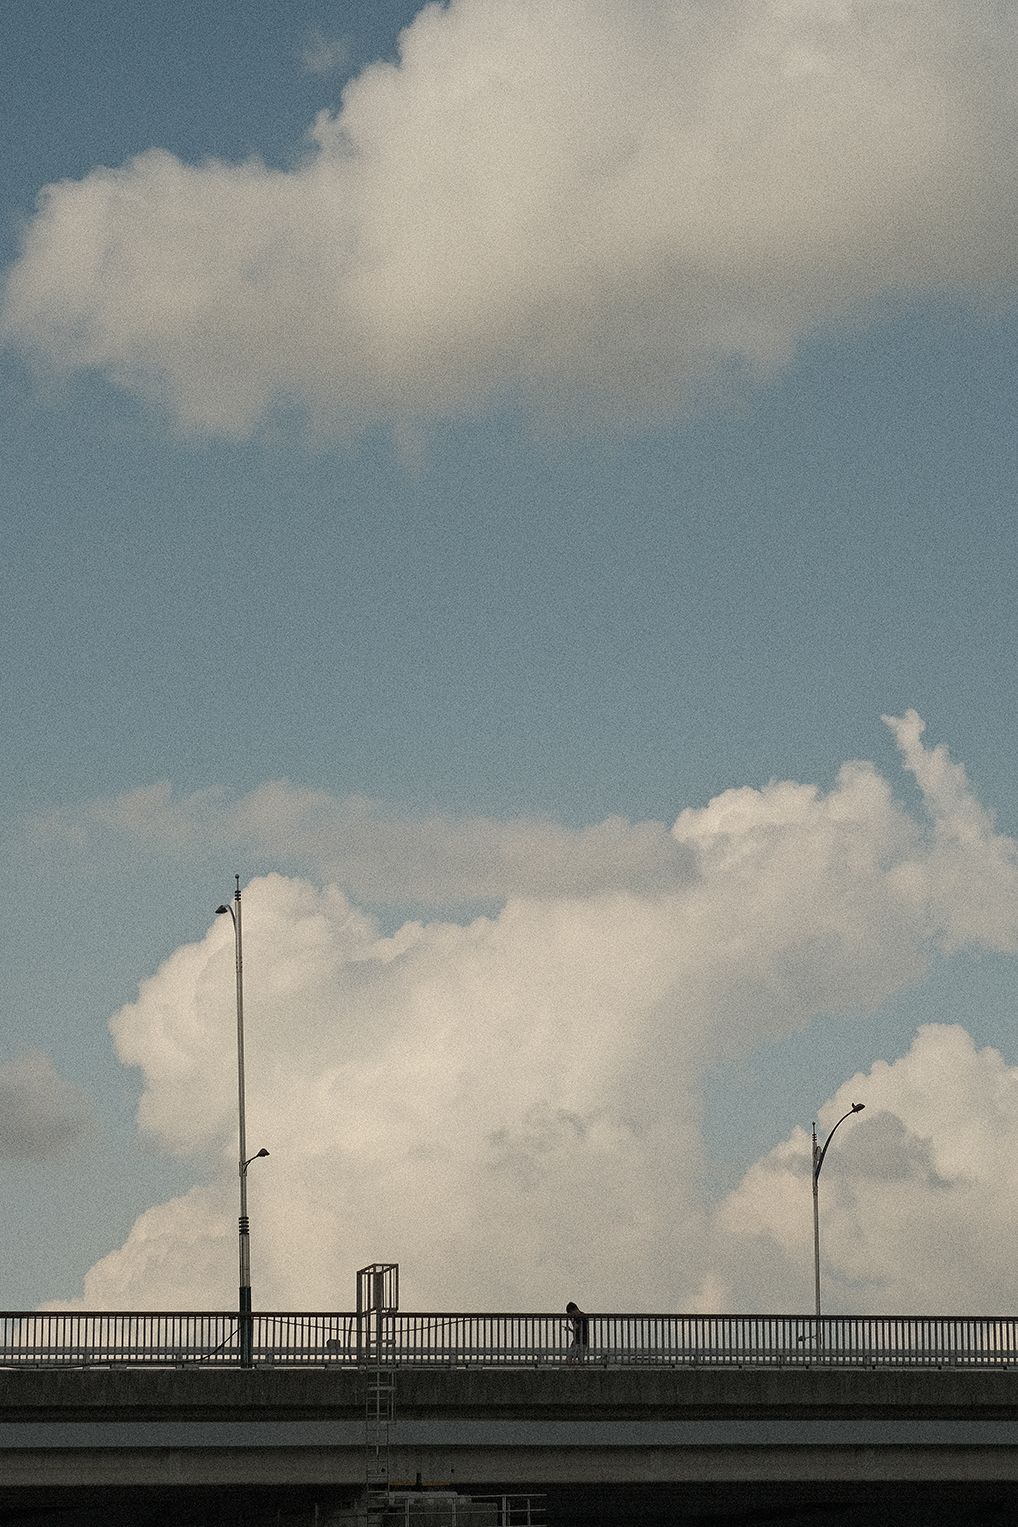 커다란 흰 구름을 배경으로 다리 위를 걸어가는 사람의 모습